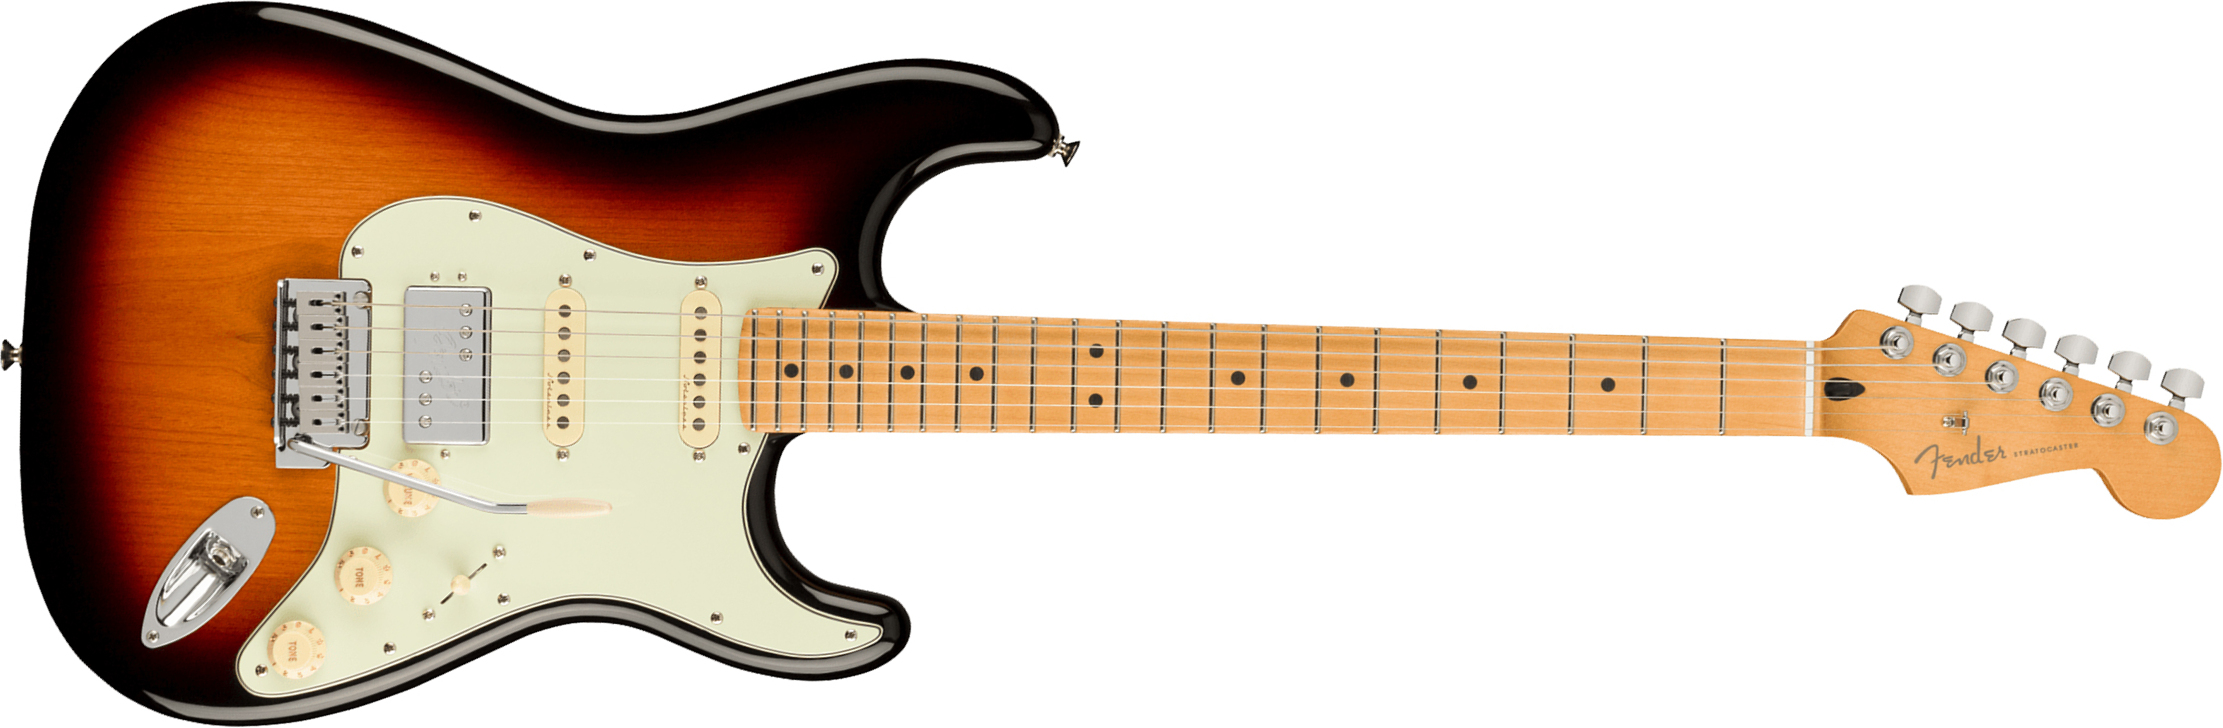 Fender Strat Player Plus Mex Hss Trem Mn - 3-color Sunburst - Guitare Électrique Forme Str - Main picture